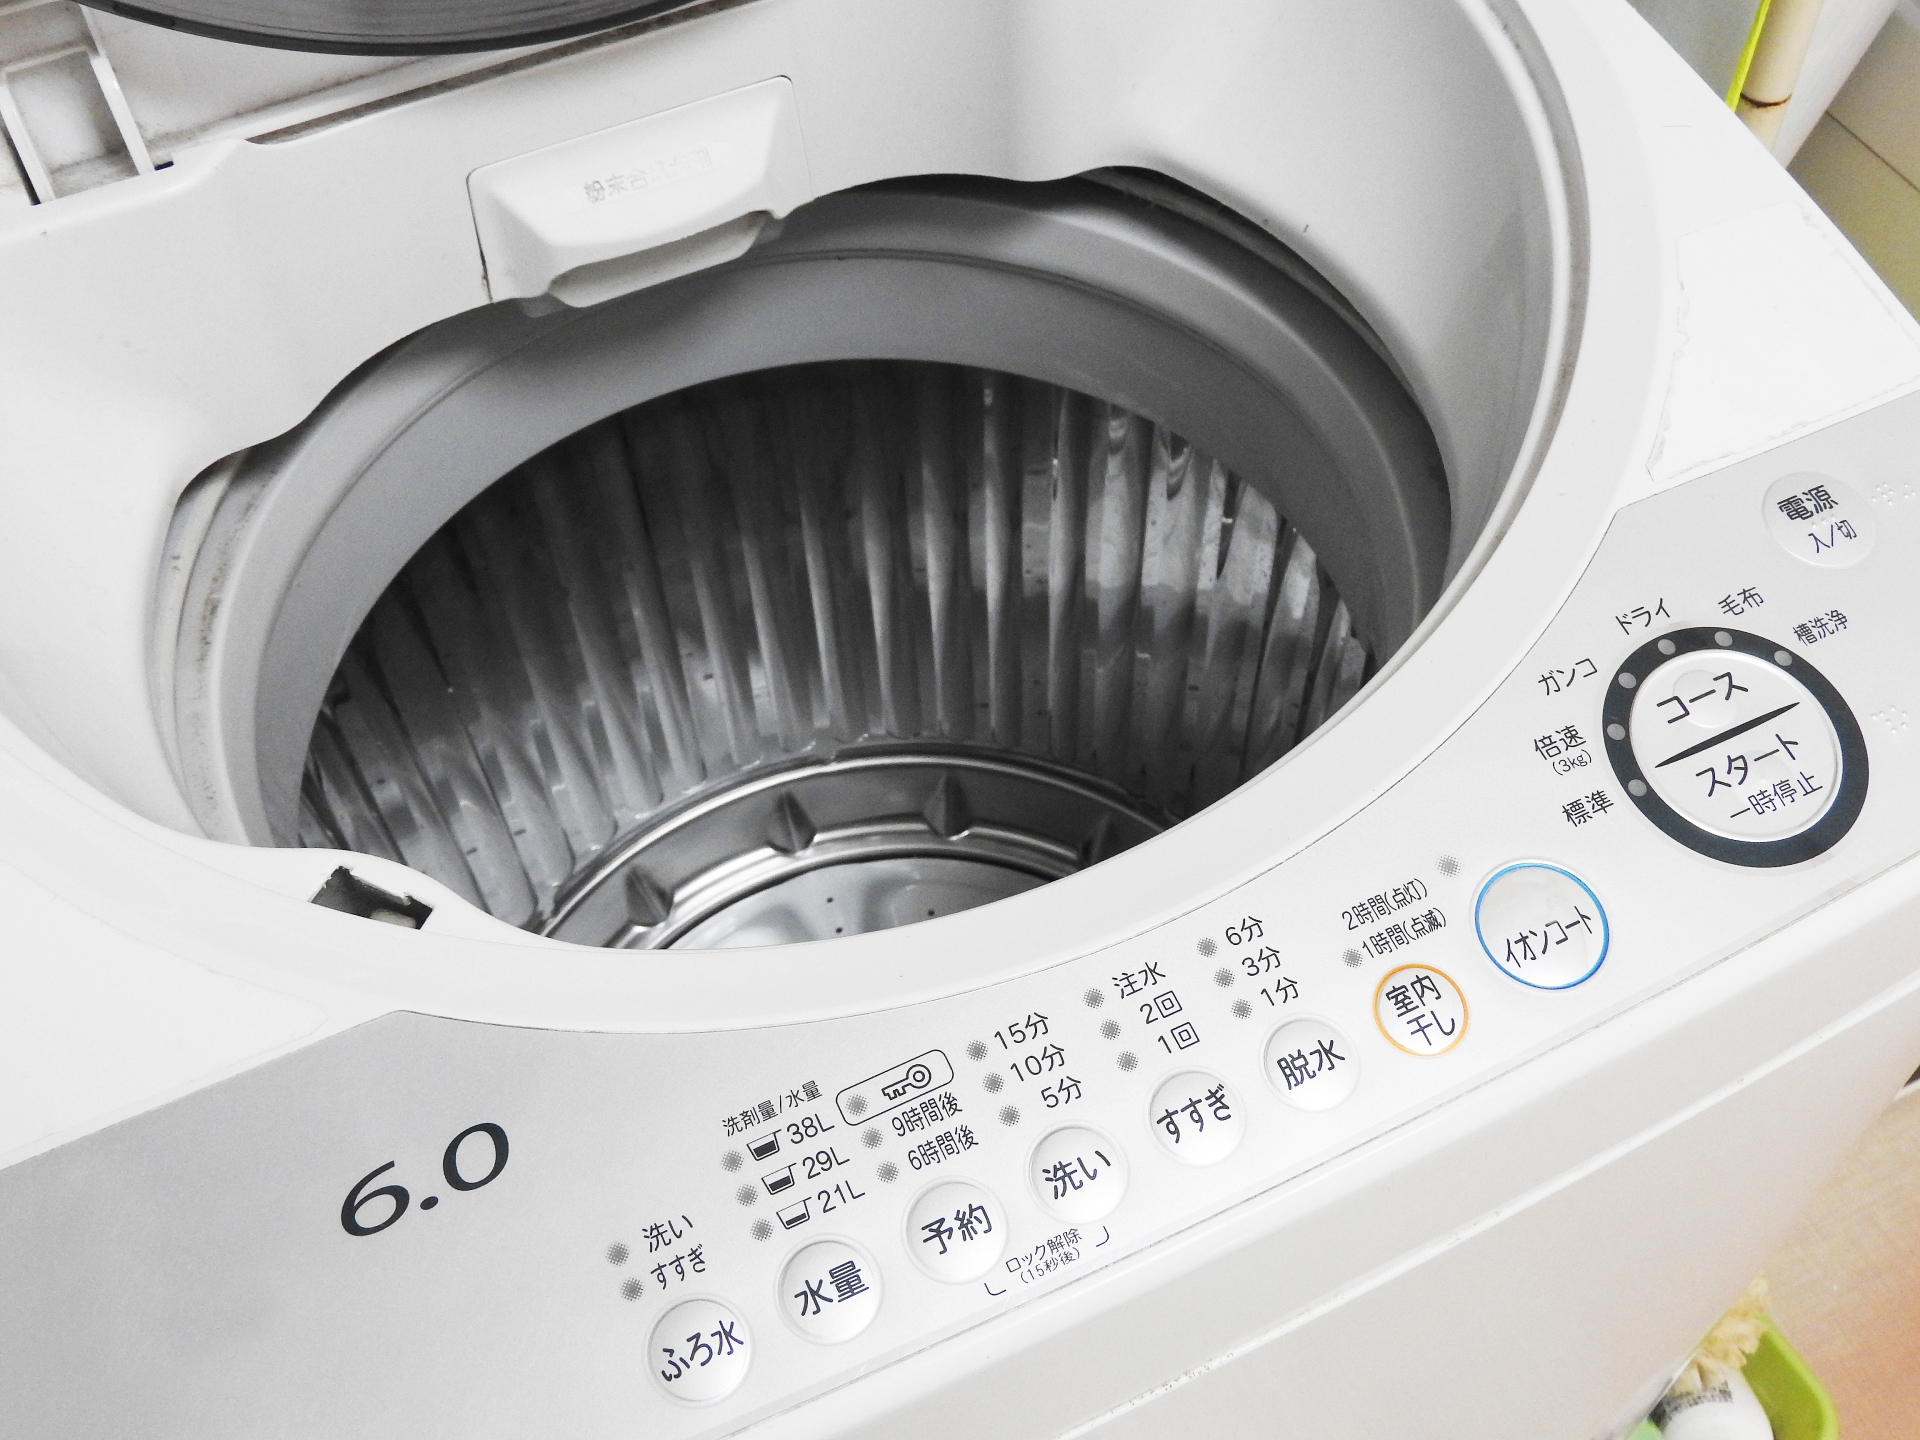 洗濯機のティッシュの掃除方法と一緒に洗濯したときの対処法